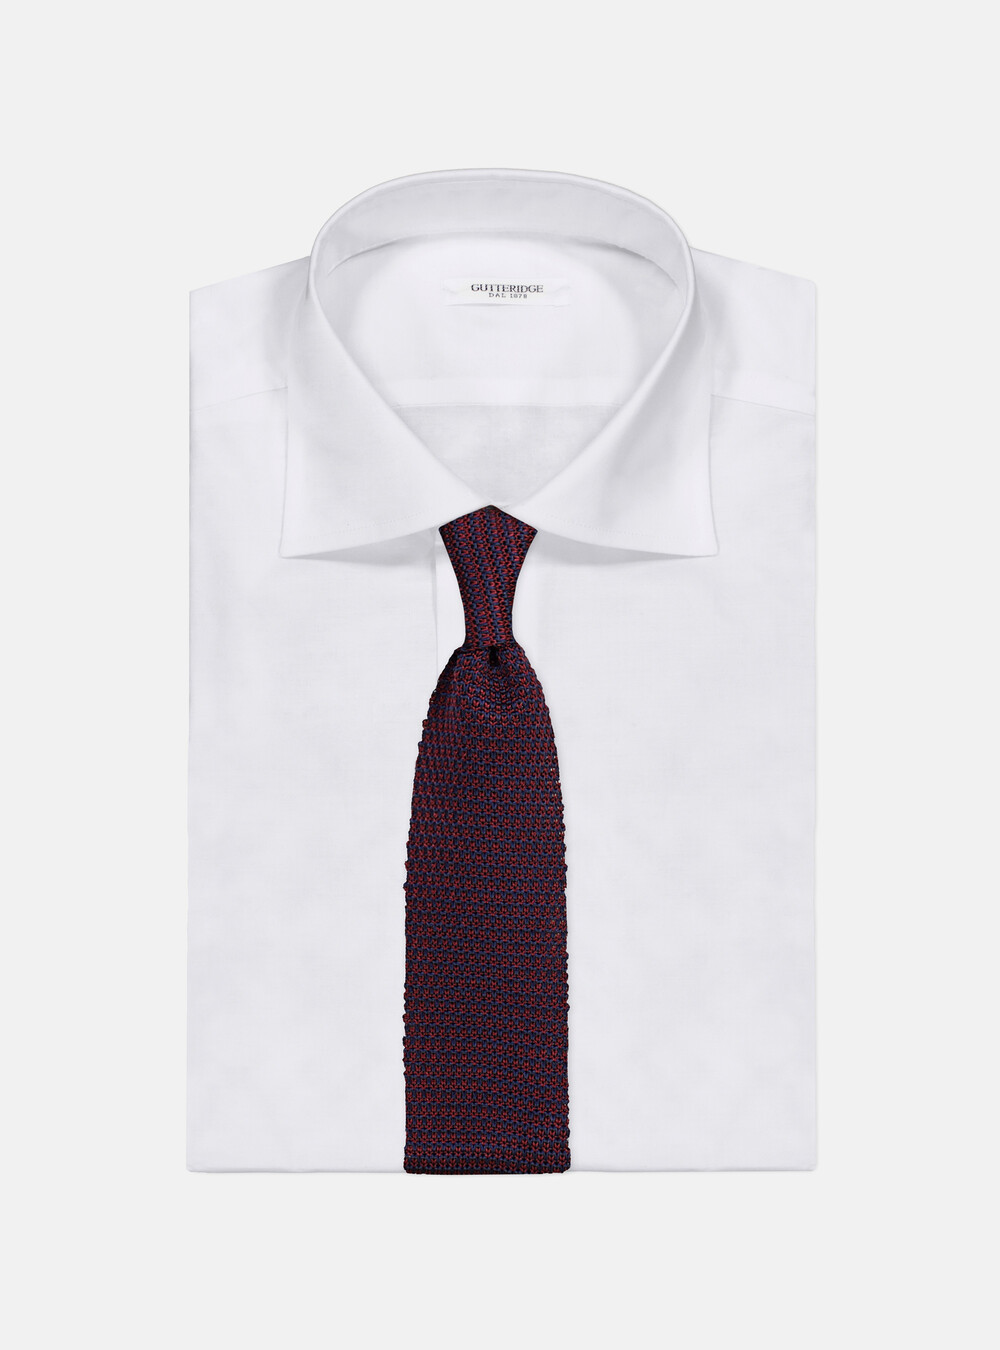 Cravatta in maglia bicolore | Gutteridge | Cravatte Uomo